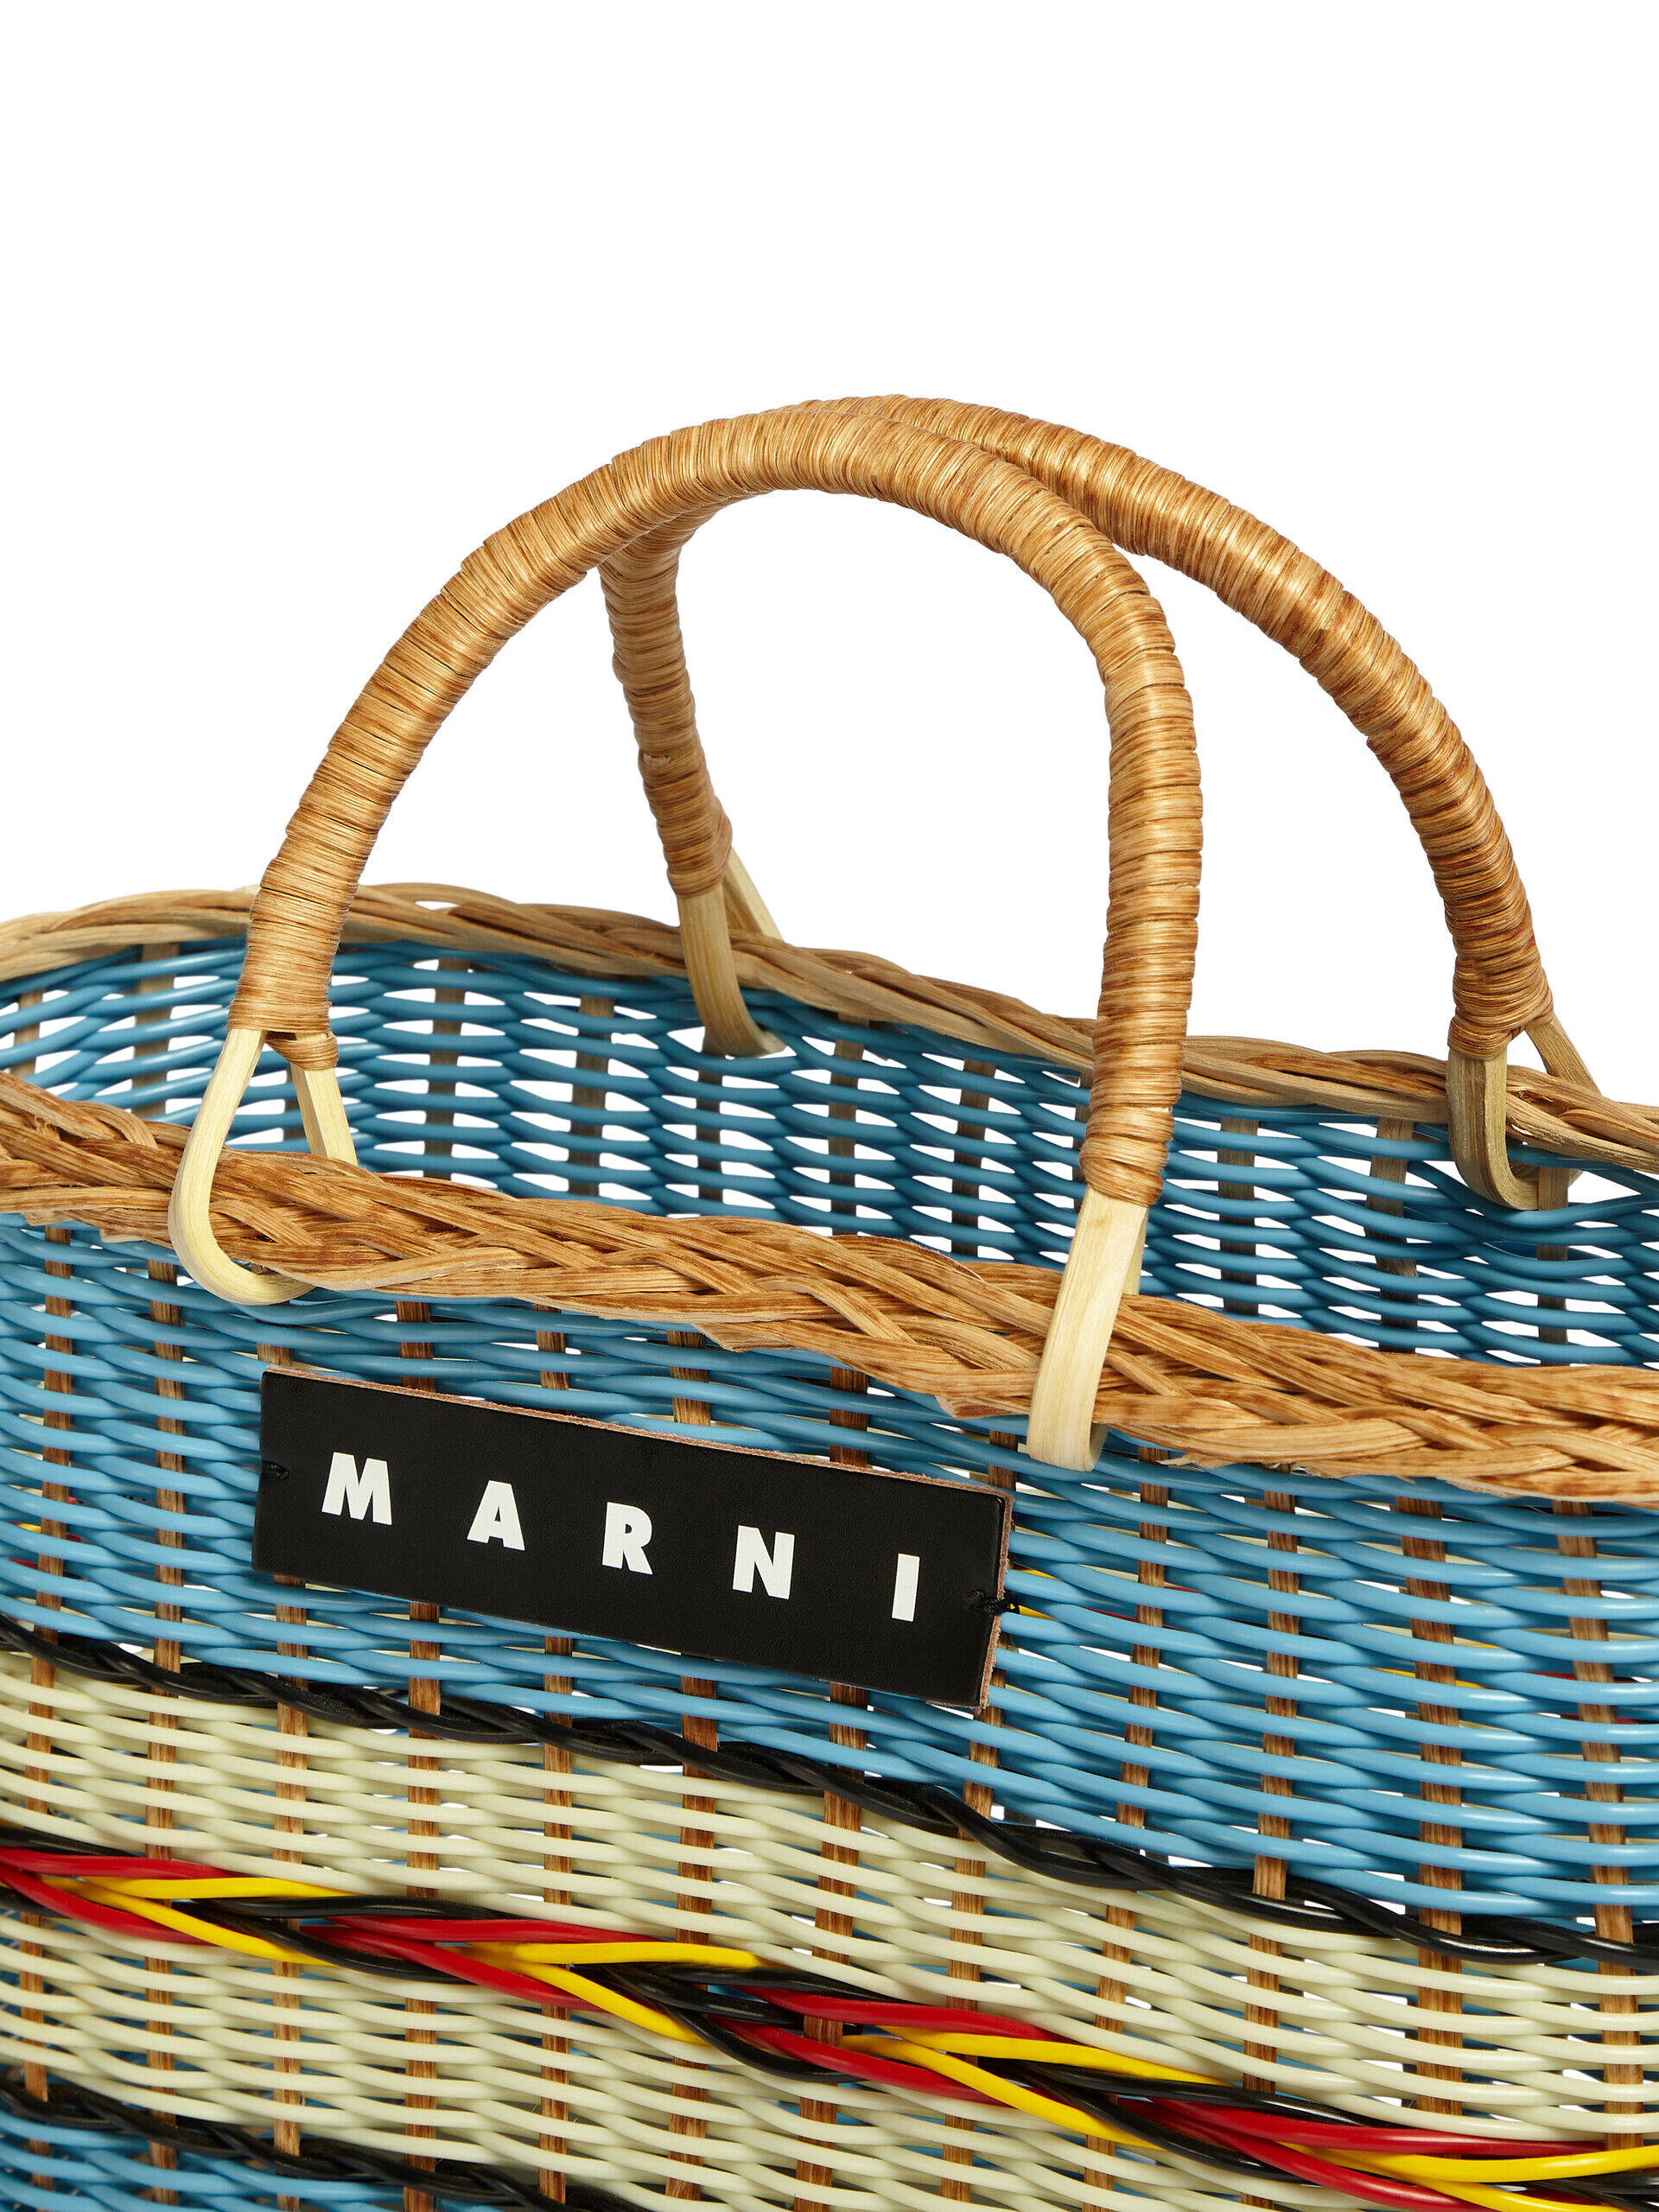 MARNI MARKET bag in multicolor woven material | Marni